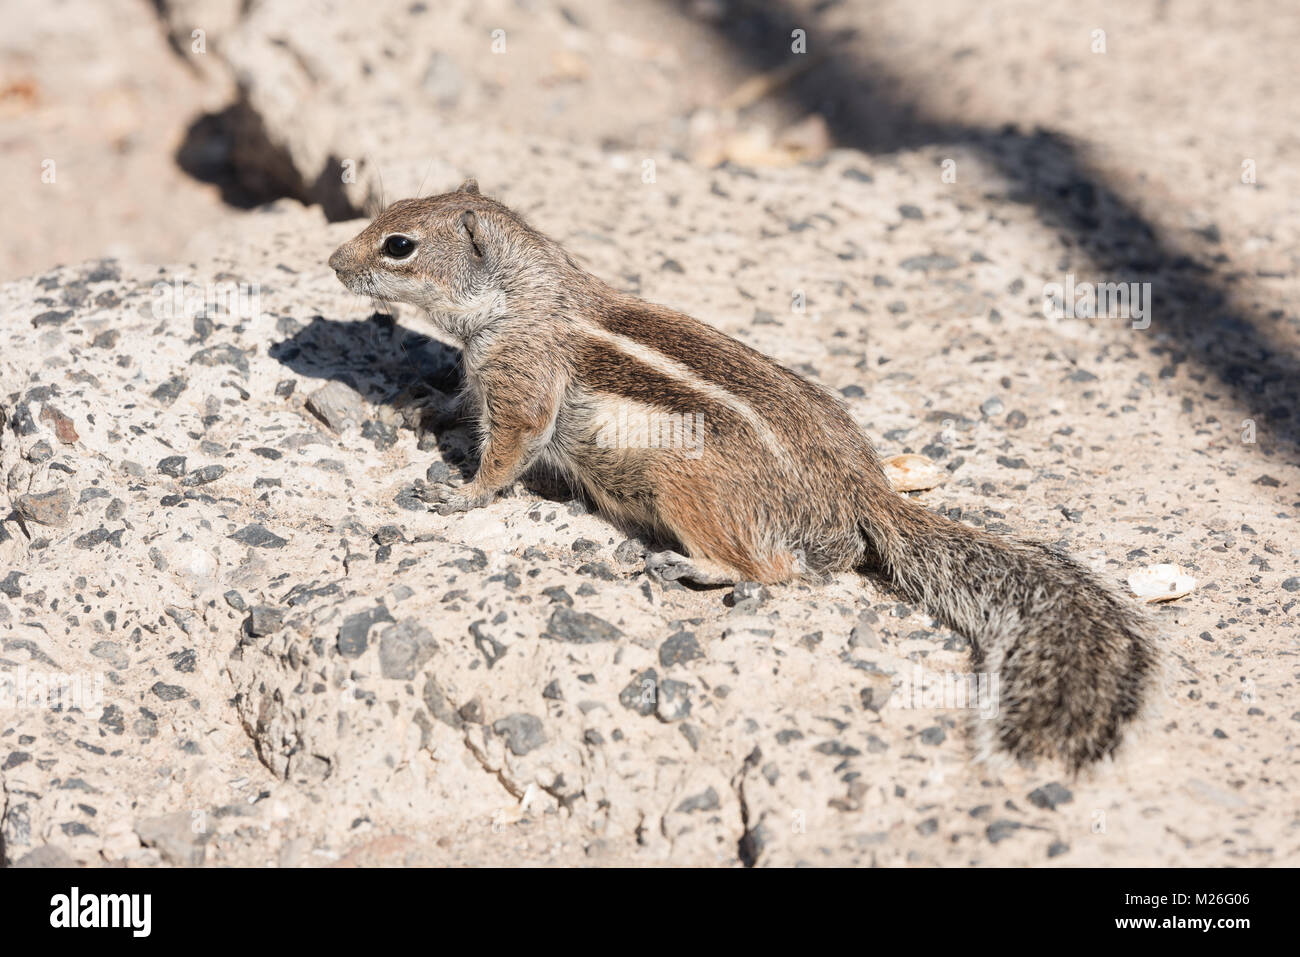 Vue sur un écureuil terrestre avec l'arrière-plan flou Banque D'Images